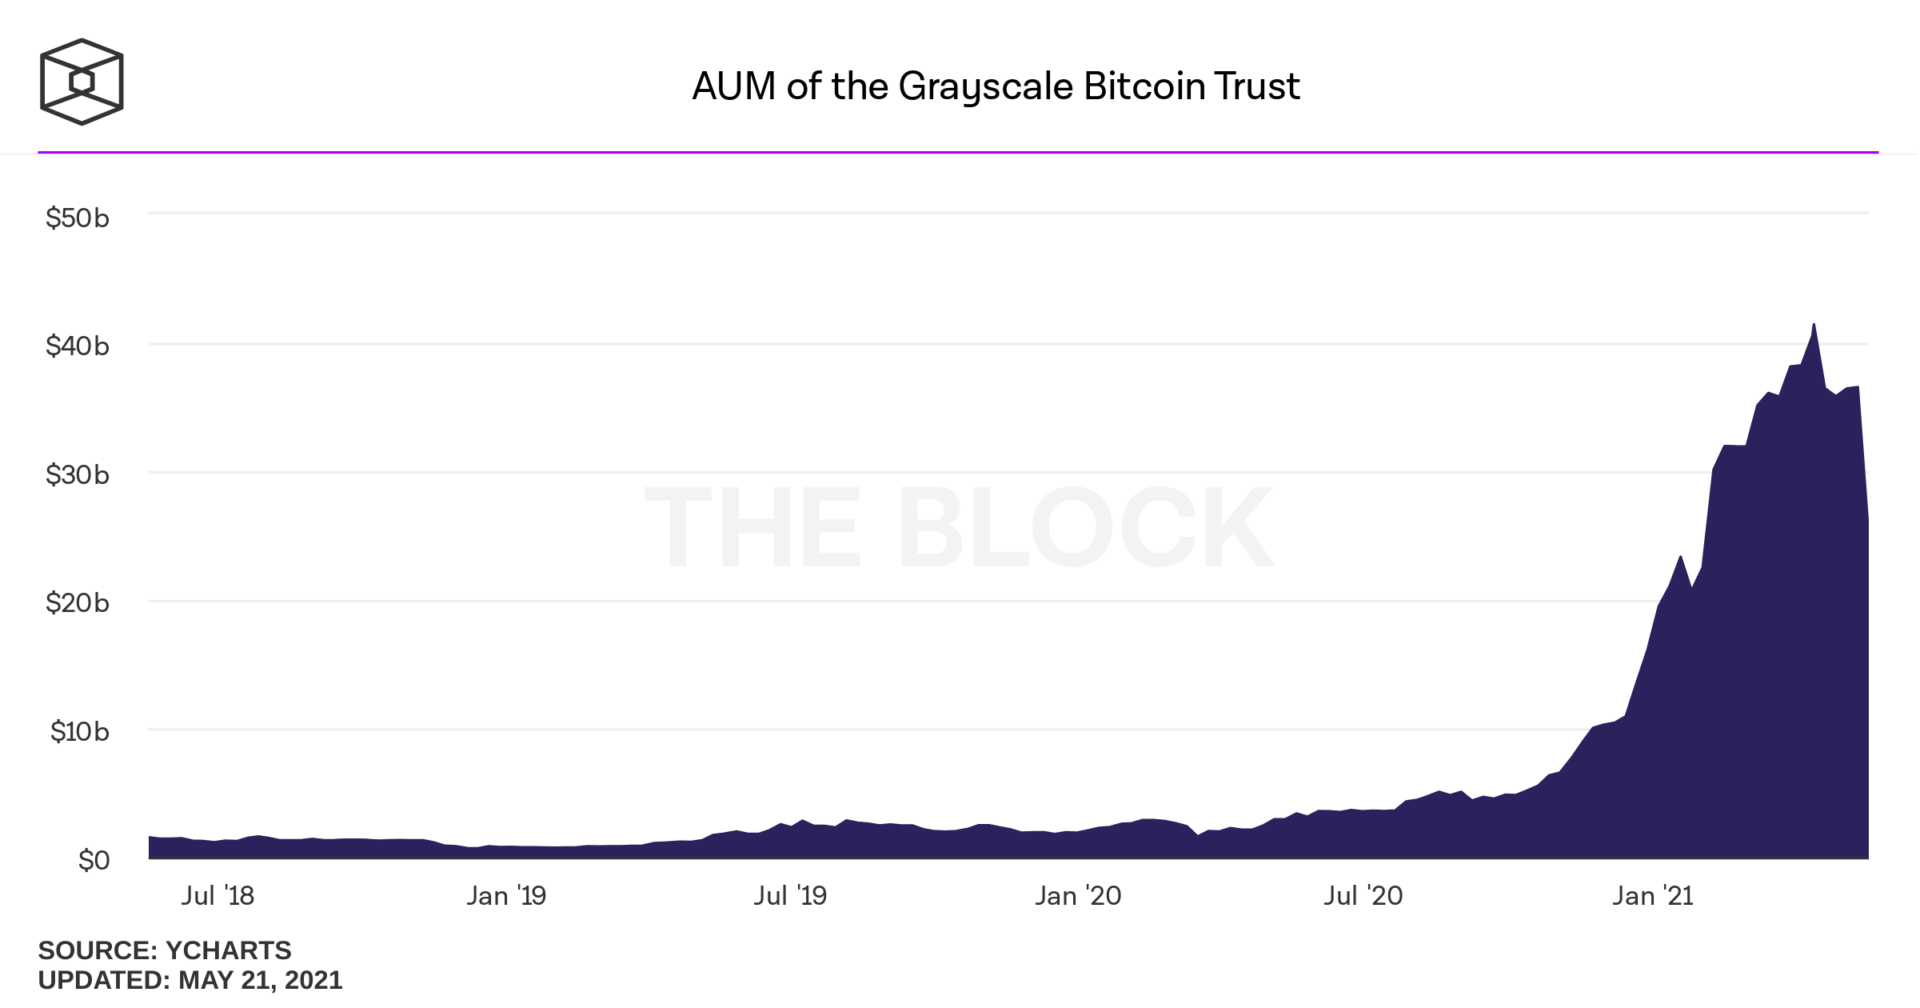 Montant des actifs sous gestion du fonds Bitcoin de Grayscale, exprimé en milliards de dollars  avec un pic à plus de 40 milliards de dollars d'actifs sous gestion